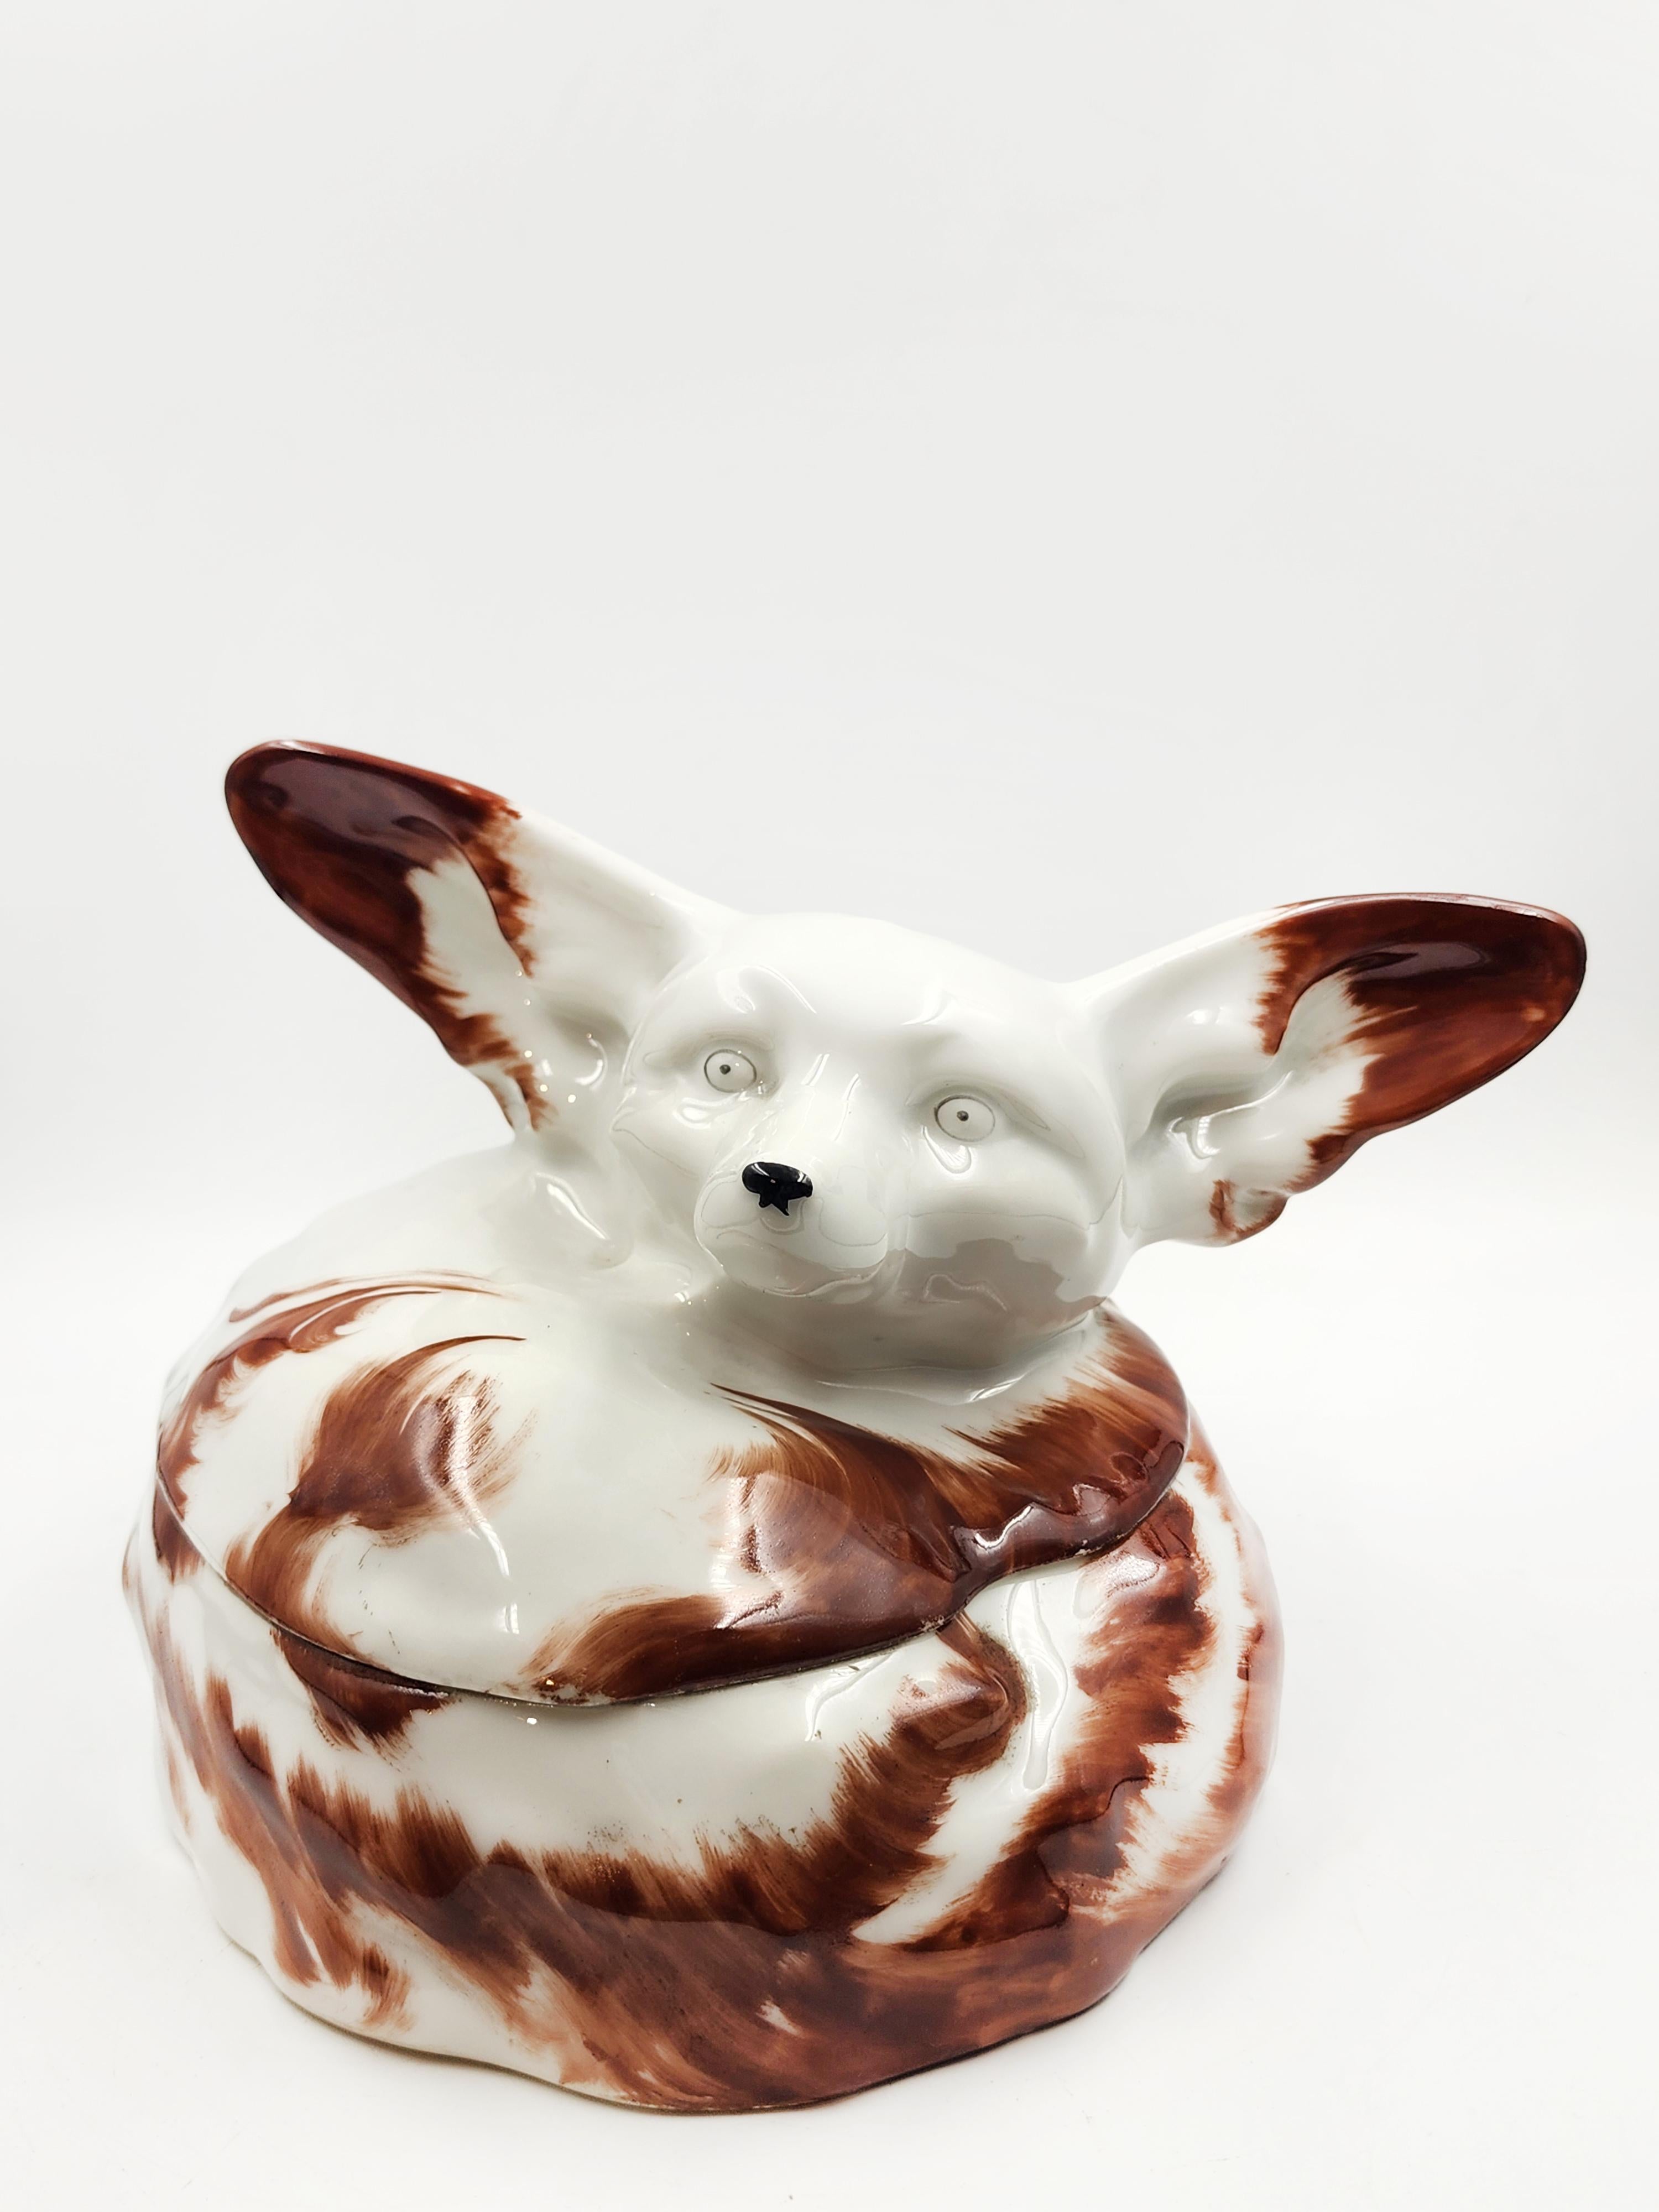 Porzellandose von Édouard-Marcel SANDOZ
Schöne Porzellandose, die einen Fennec-Fuchs in Weiß mit braunen Flecken darstellt. Das Modell wurde 1921 von dem großen Schweizer Bildhauer Édouard-Marcel Sandoz geschaffen und stammt von Théodore Haviland